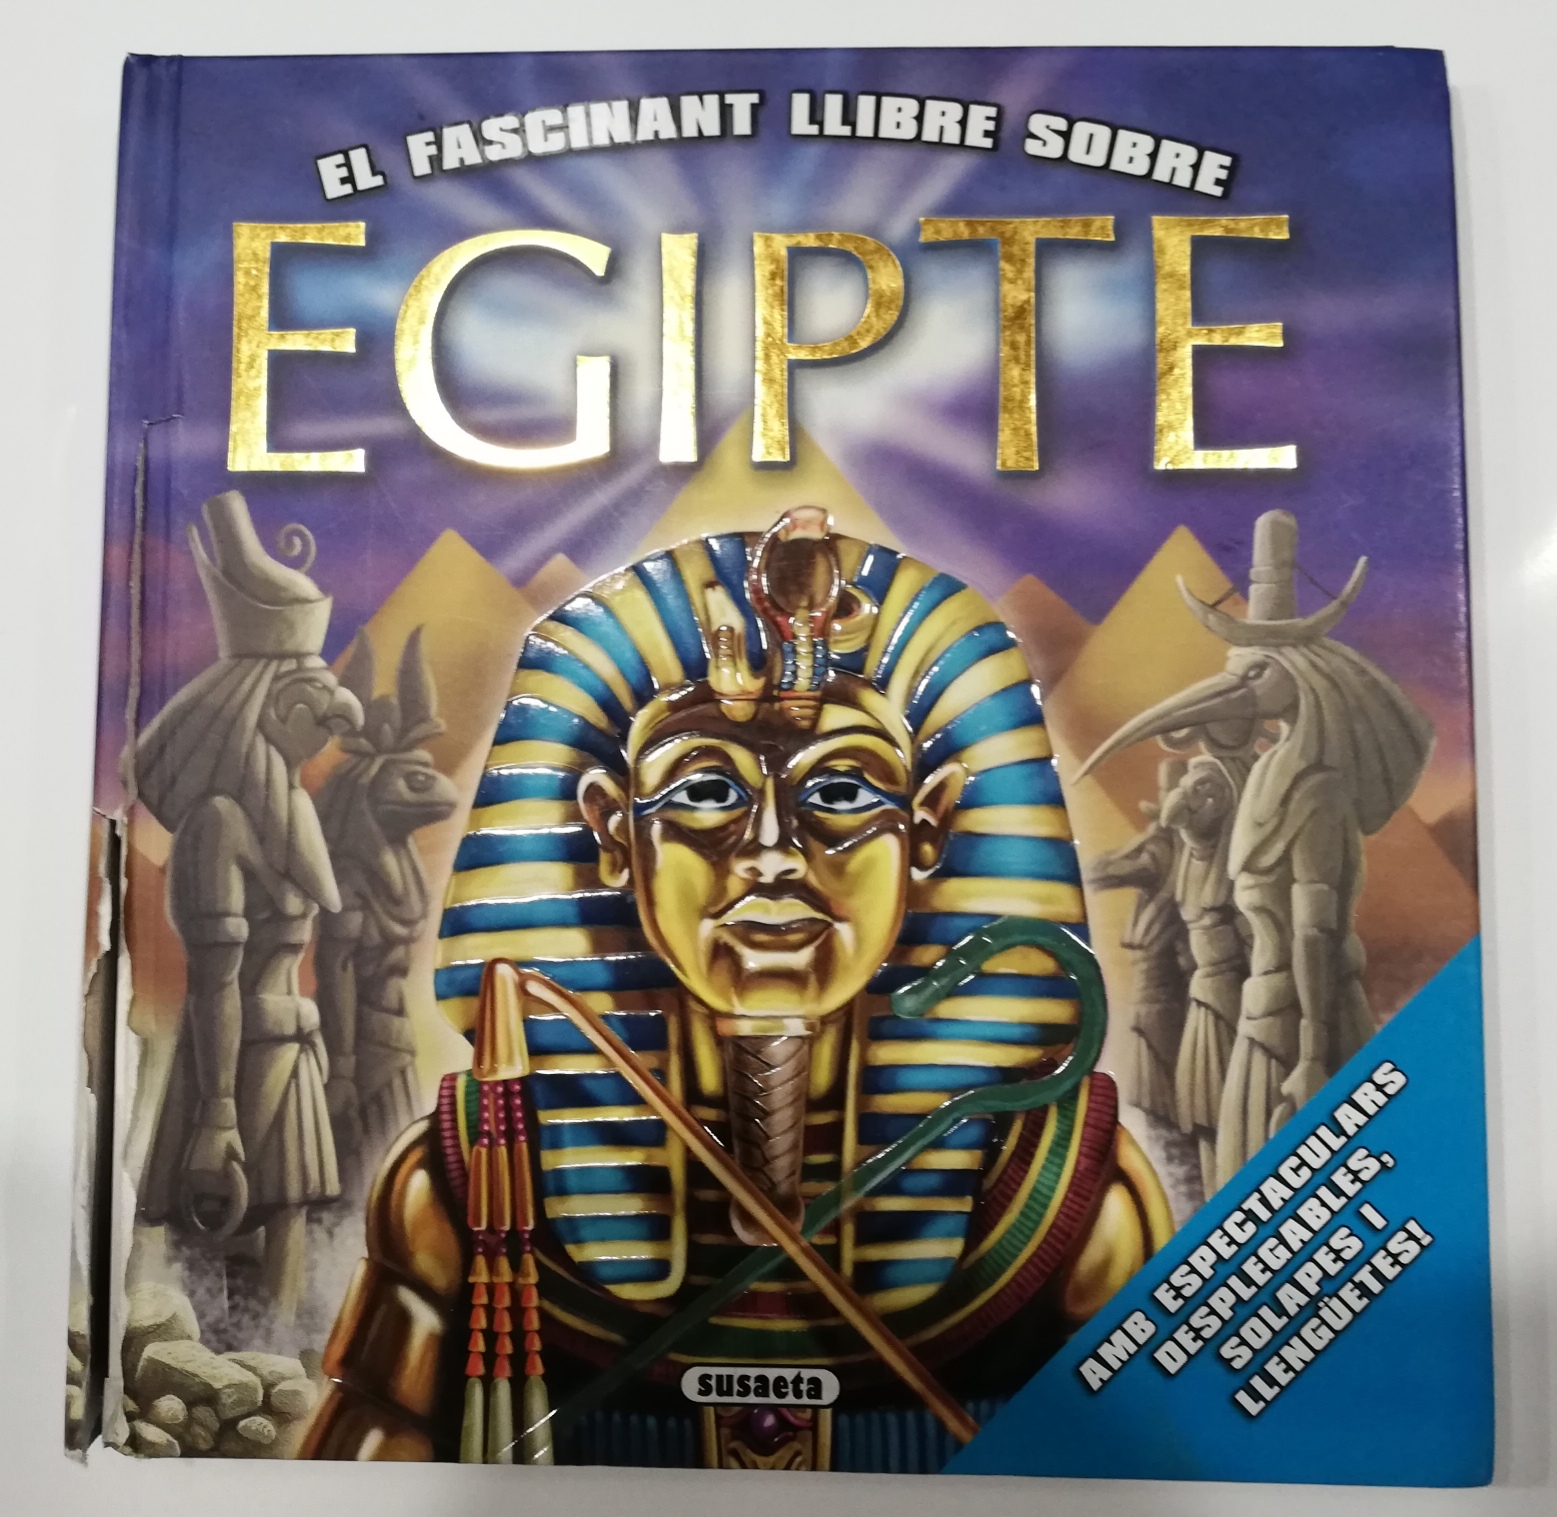 El Fascinant Llibre sobre Egipte. Libro desplegable. Susaeta